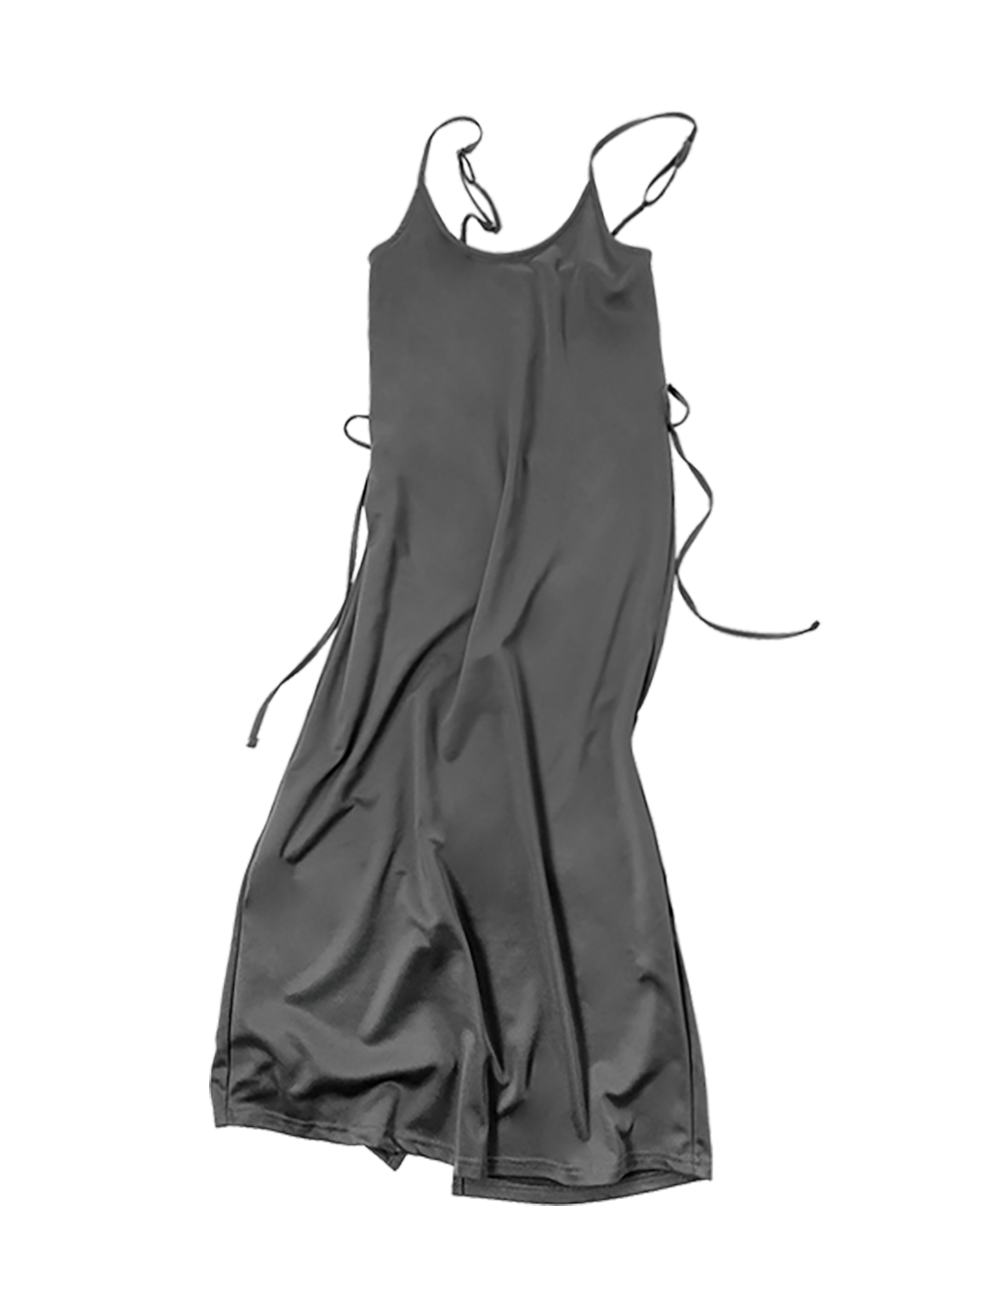 String slip dress(gray)